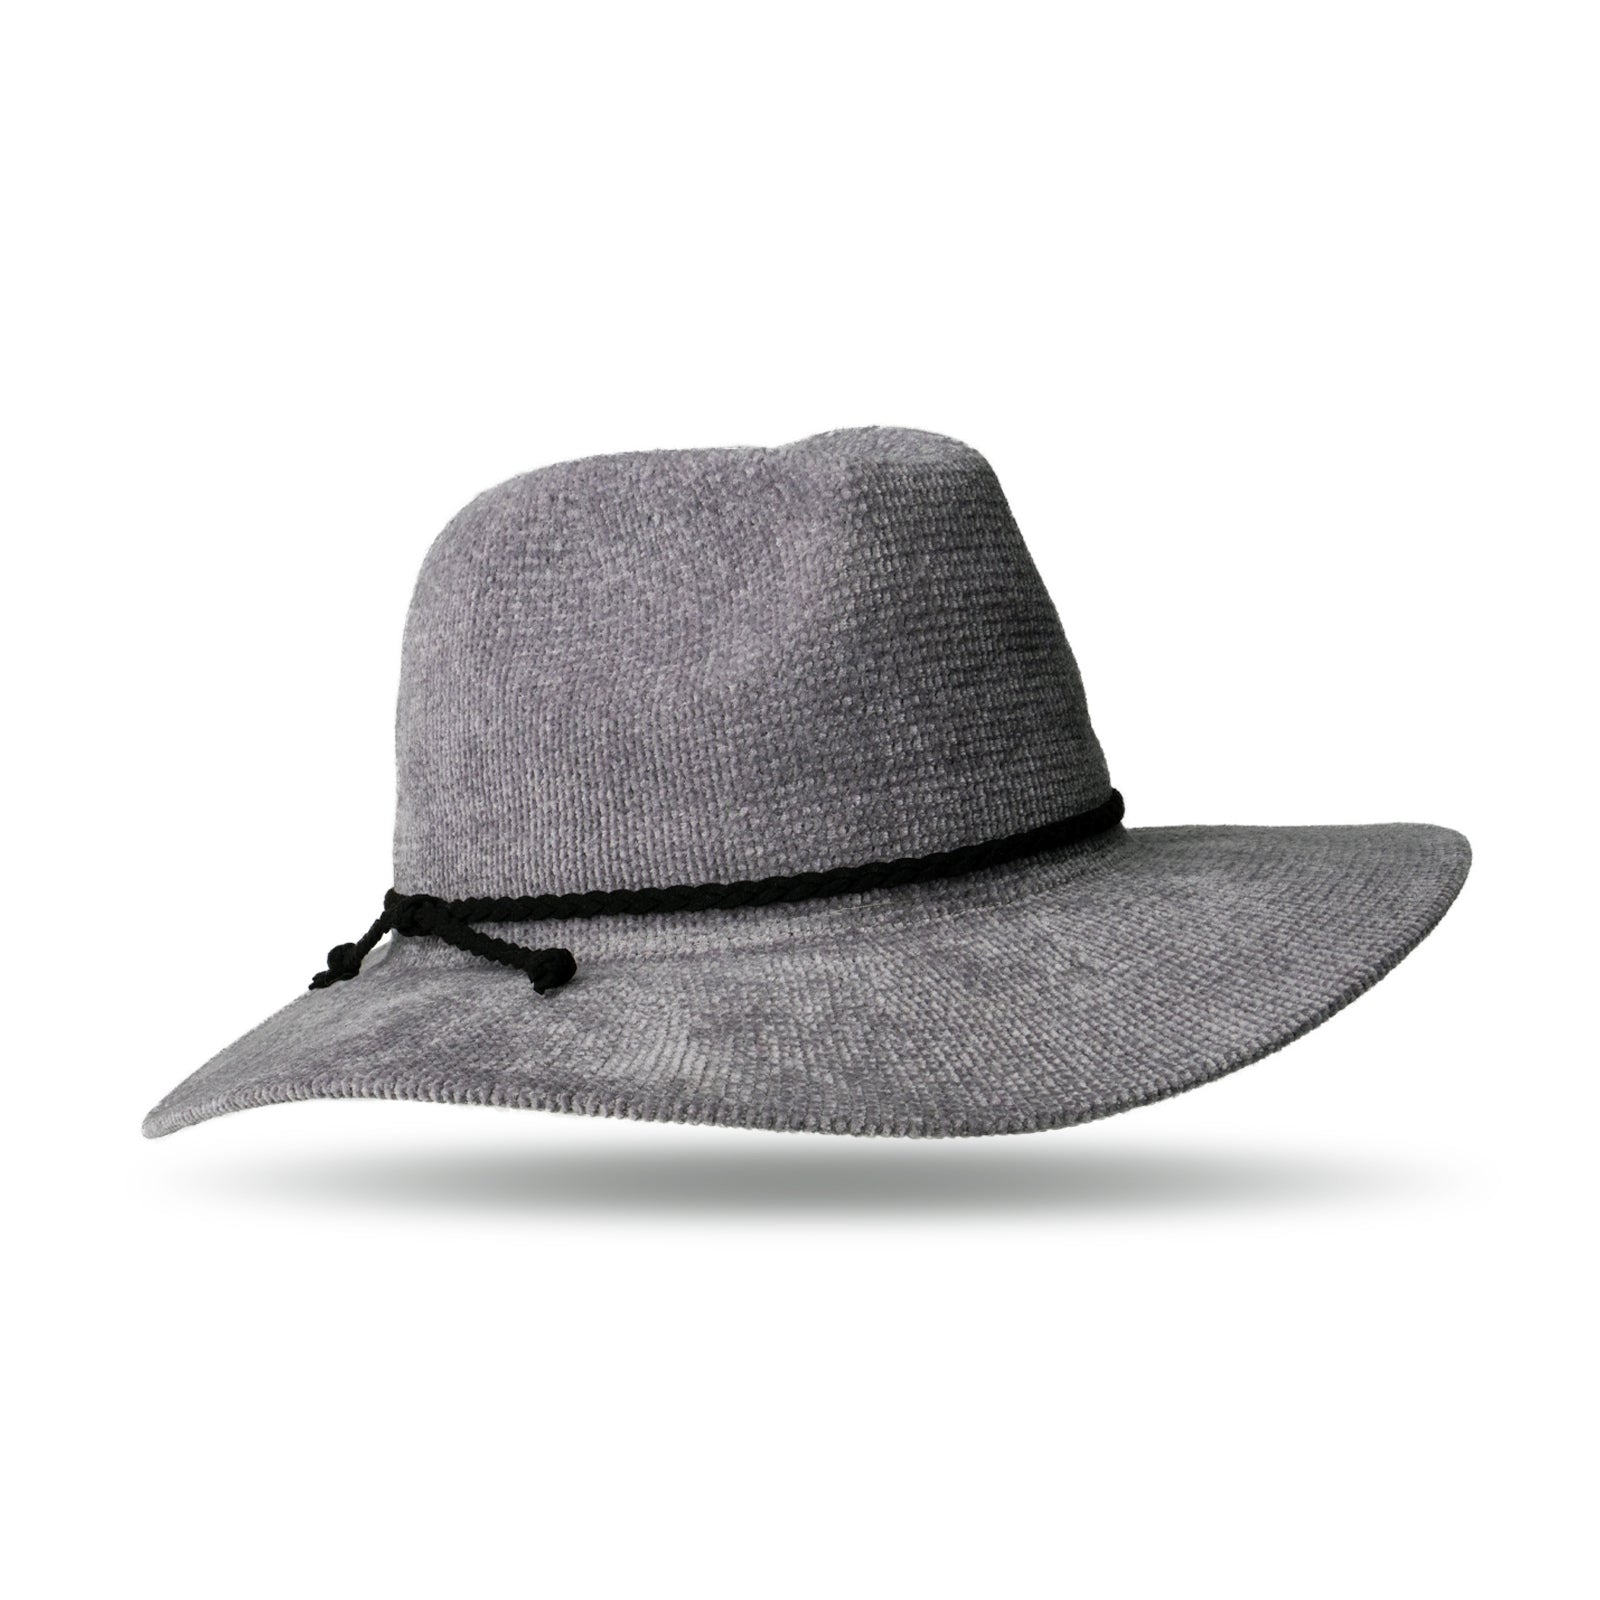 Getaway Panama Hat